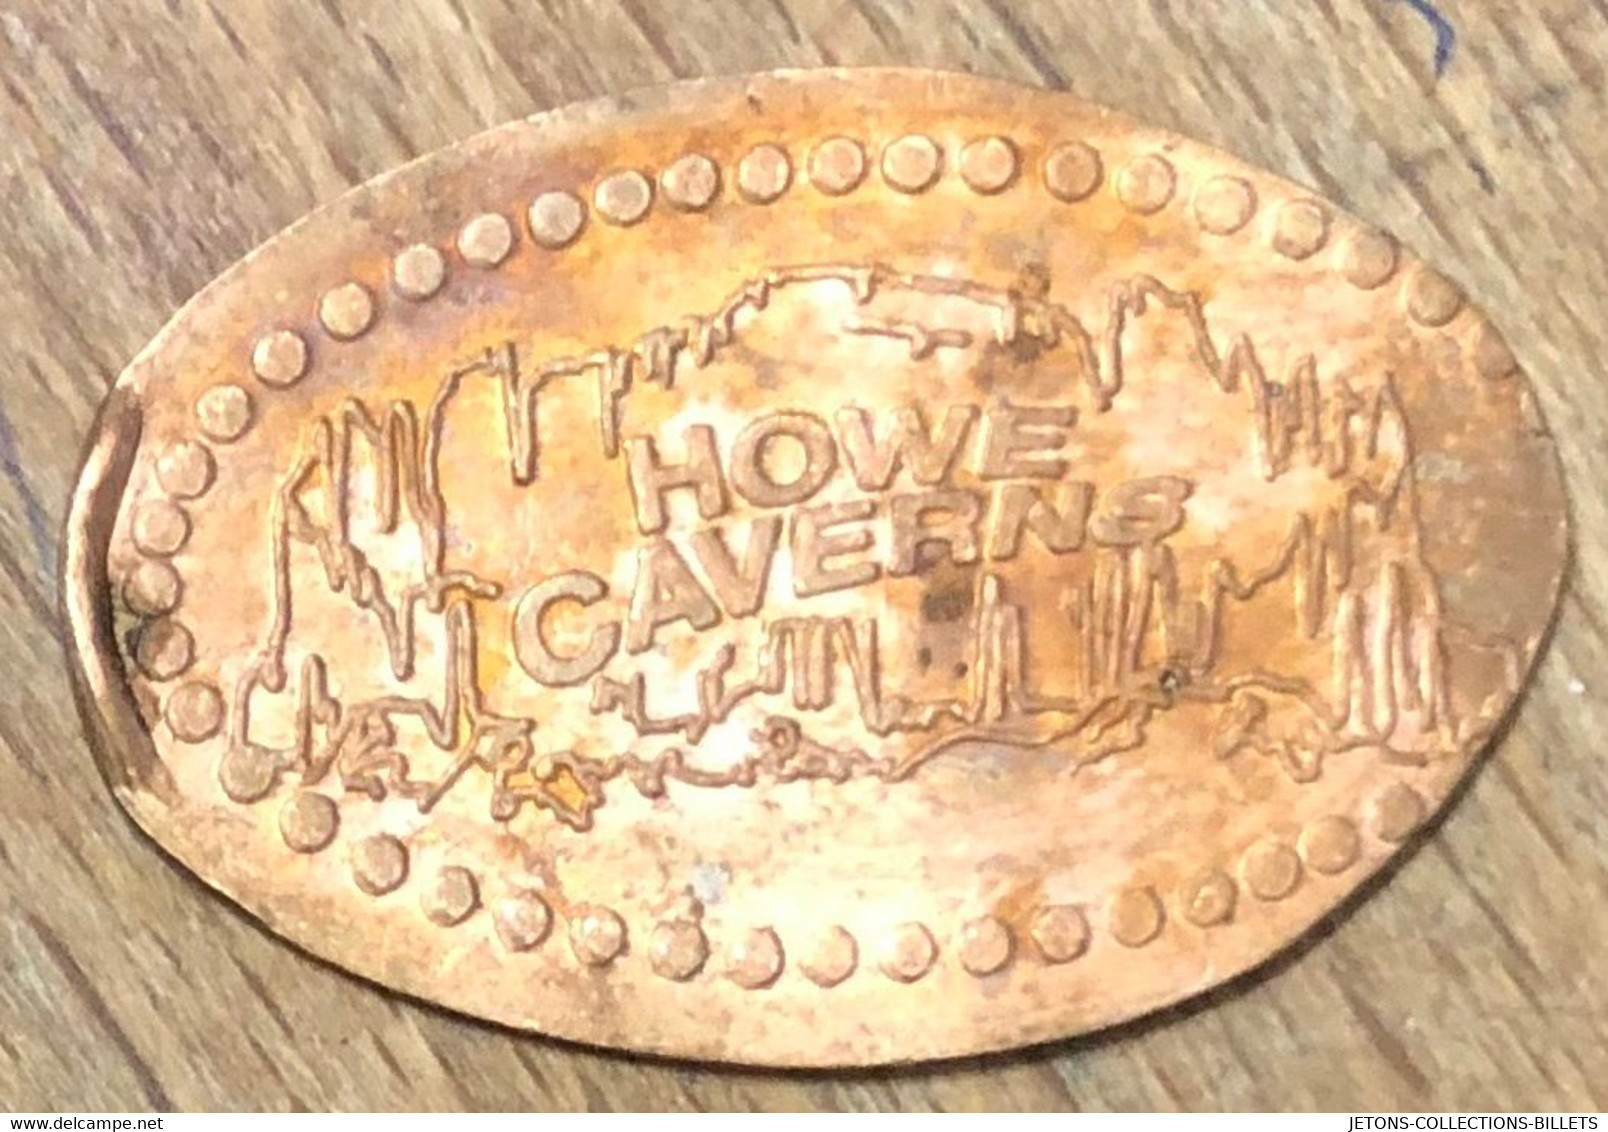 ÉTATS-UNIS USA HOWE CAVERNS PIÈCE ÉCRASÉE PENNY ELONGATED COIN MEDAILLE TOURISTIQUE MEDALS TOKENS - Elongated Coins